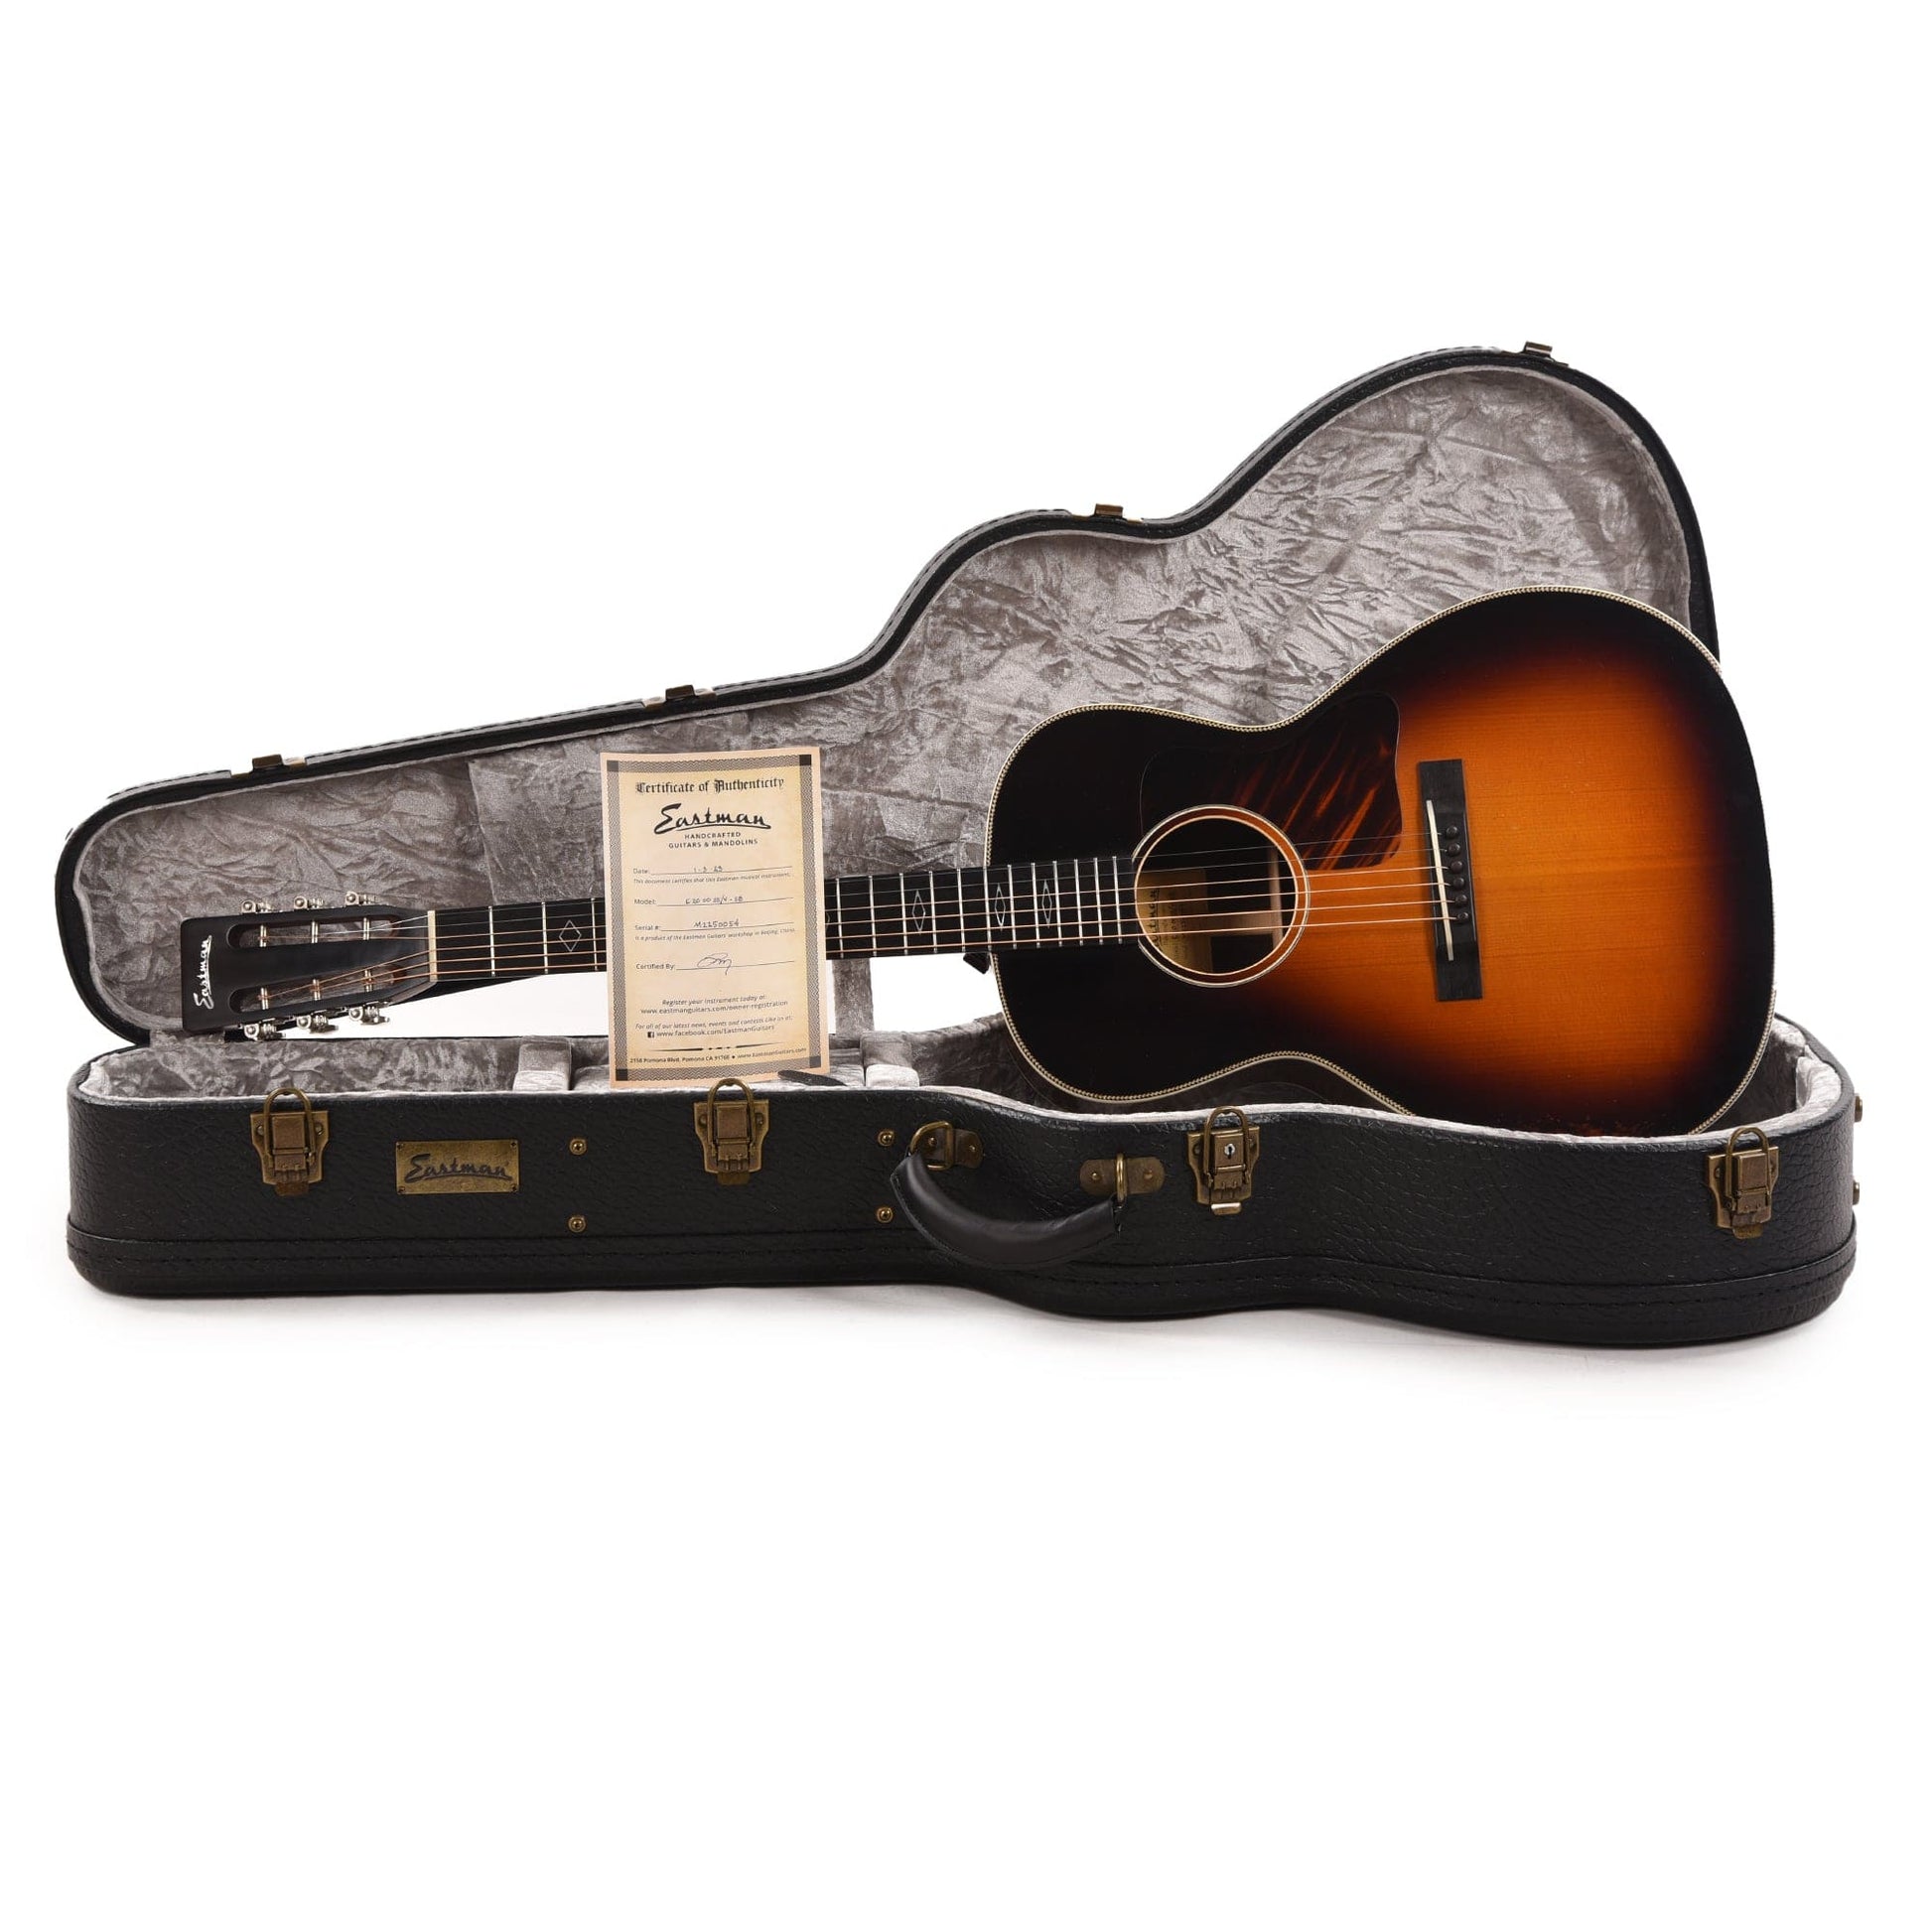 Eastman E20OOSS/v Sitka/Rosewood OO Antique Sunburst Varnish Acoustic Guitars / Parlor